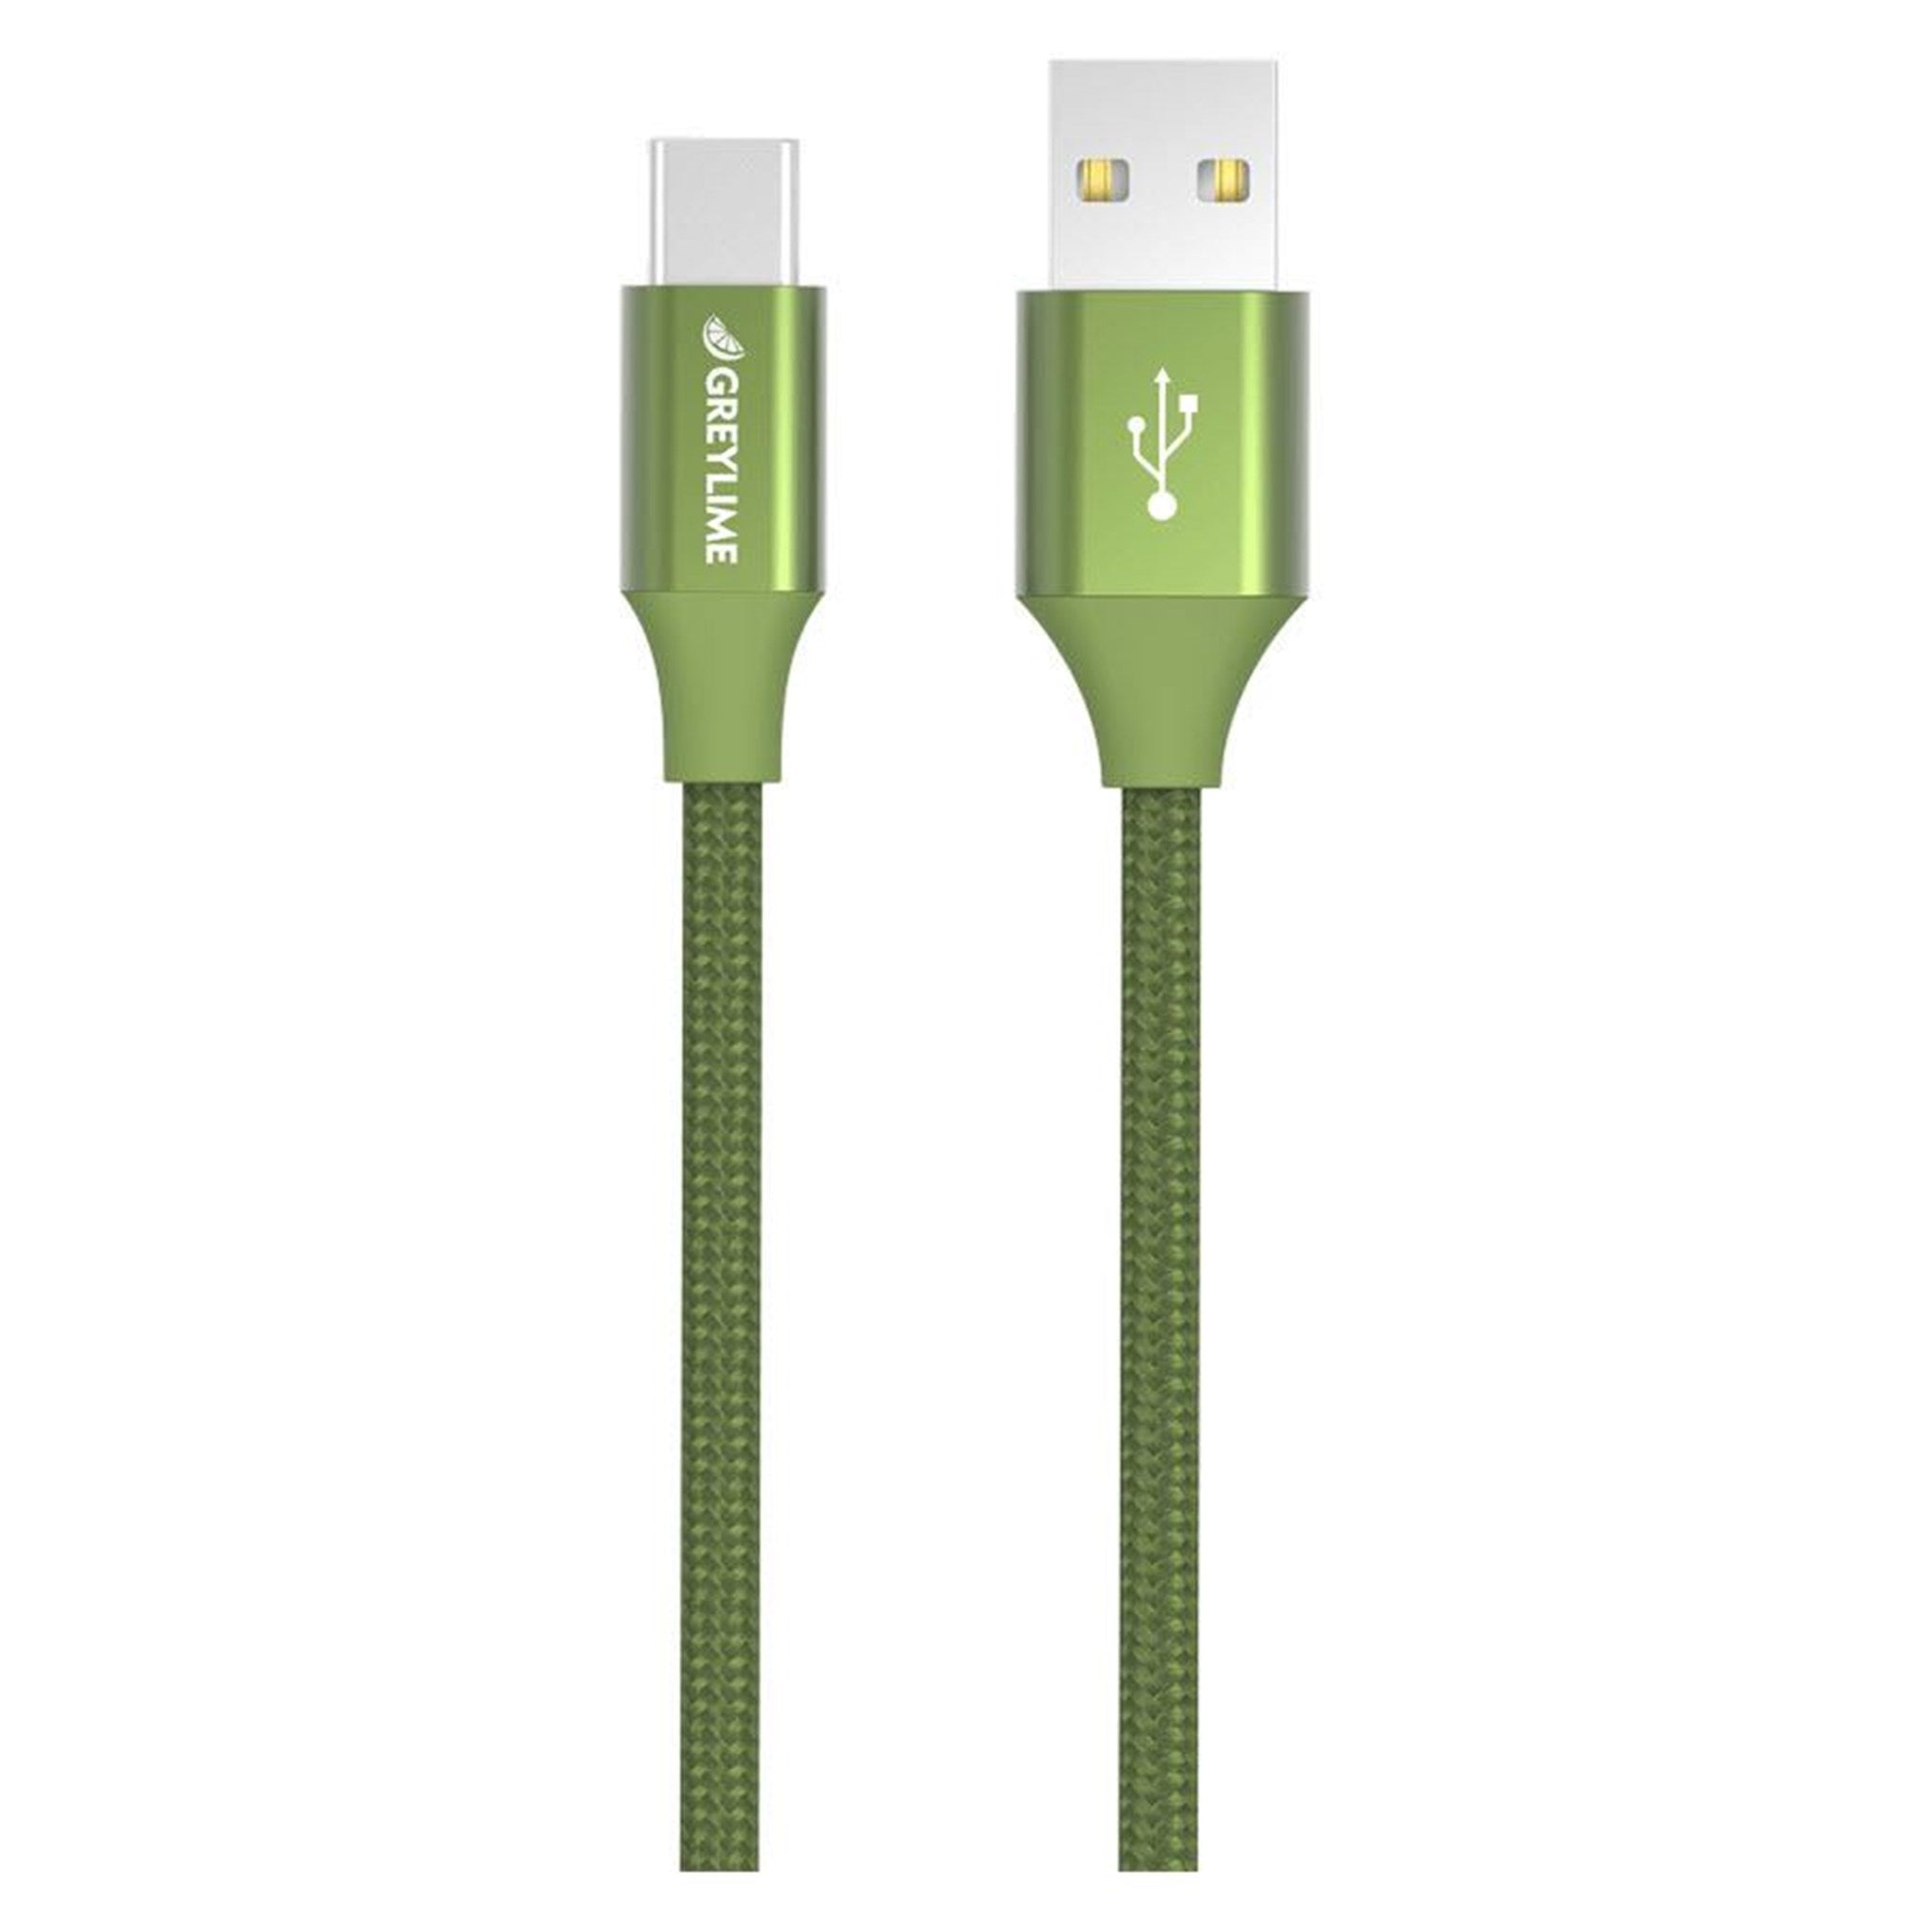 Billede af GreyLime Braided USB-A til USB-C Kabel Grøn 1 m hos Balar